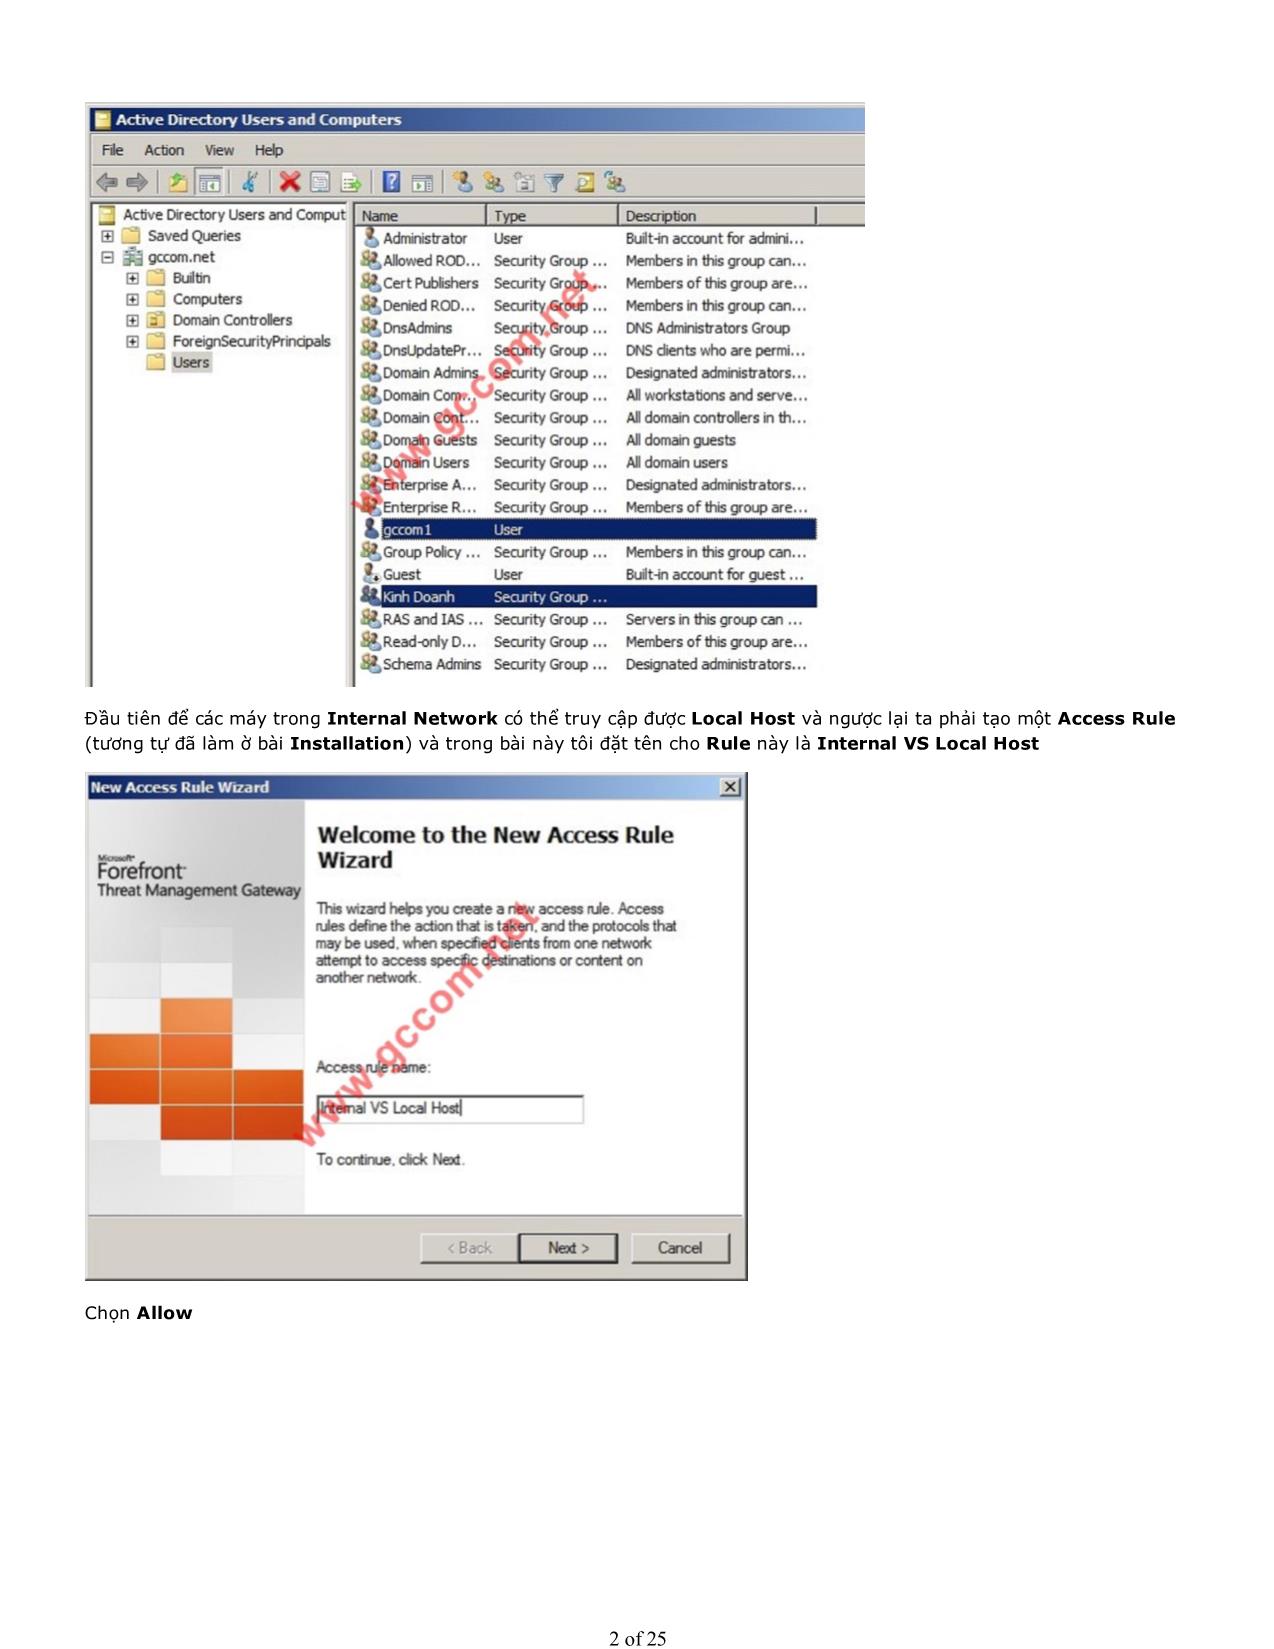 Microsoft Forefront TMG - Part 3: Access Rule trang 2